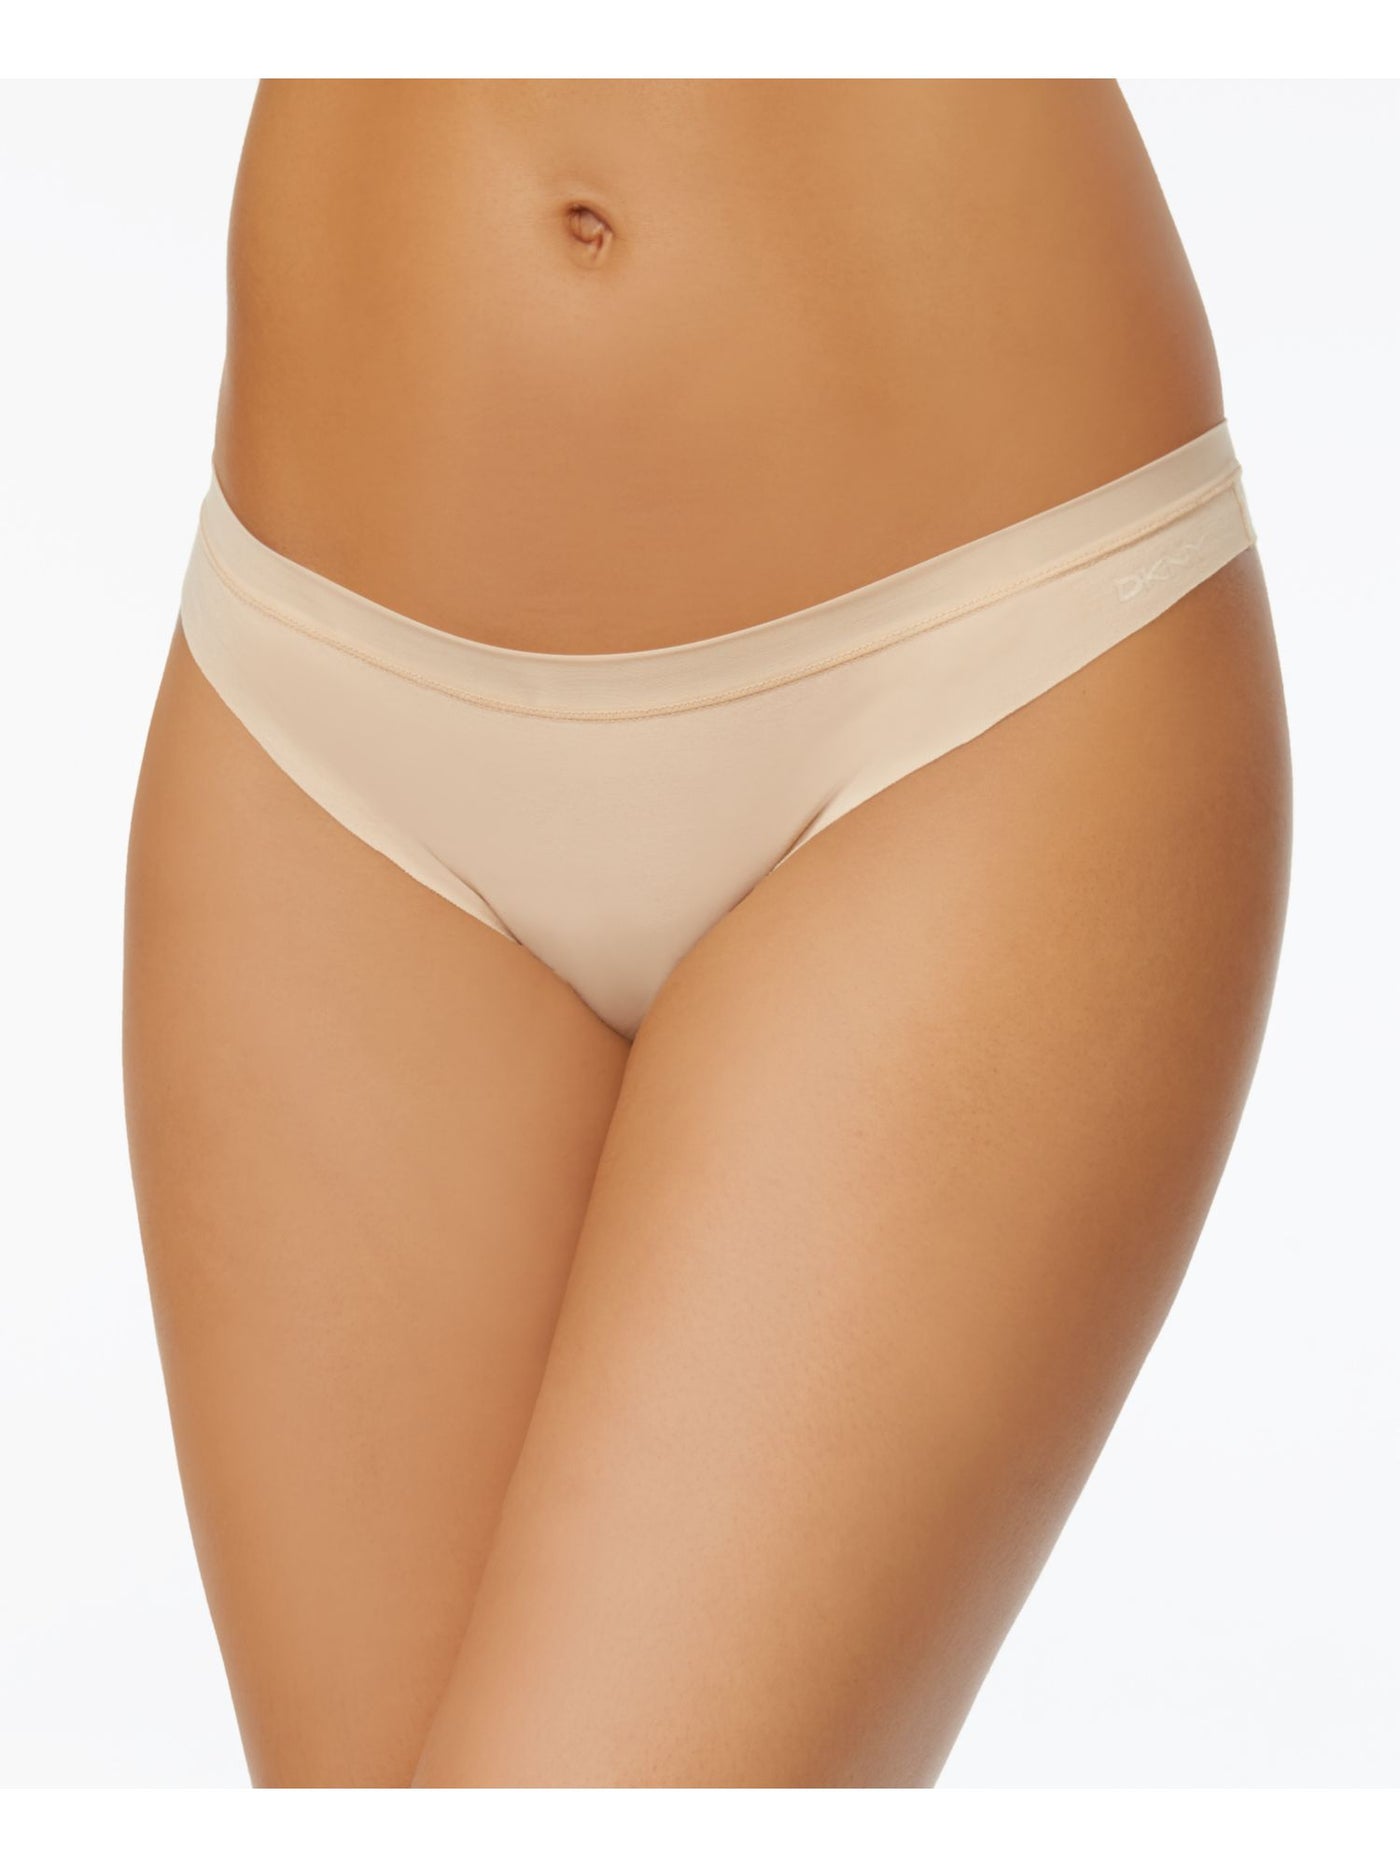 DKNY Intimates Beige Cotton Thong Underwear S